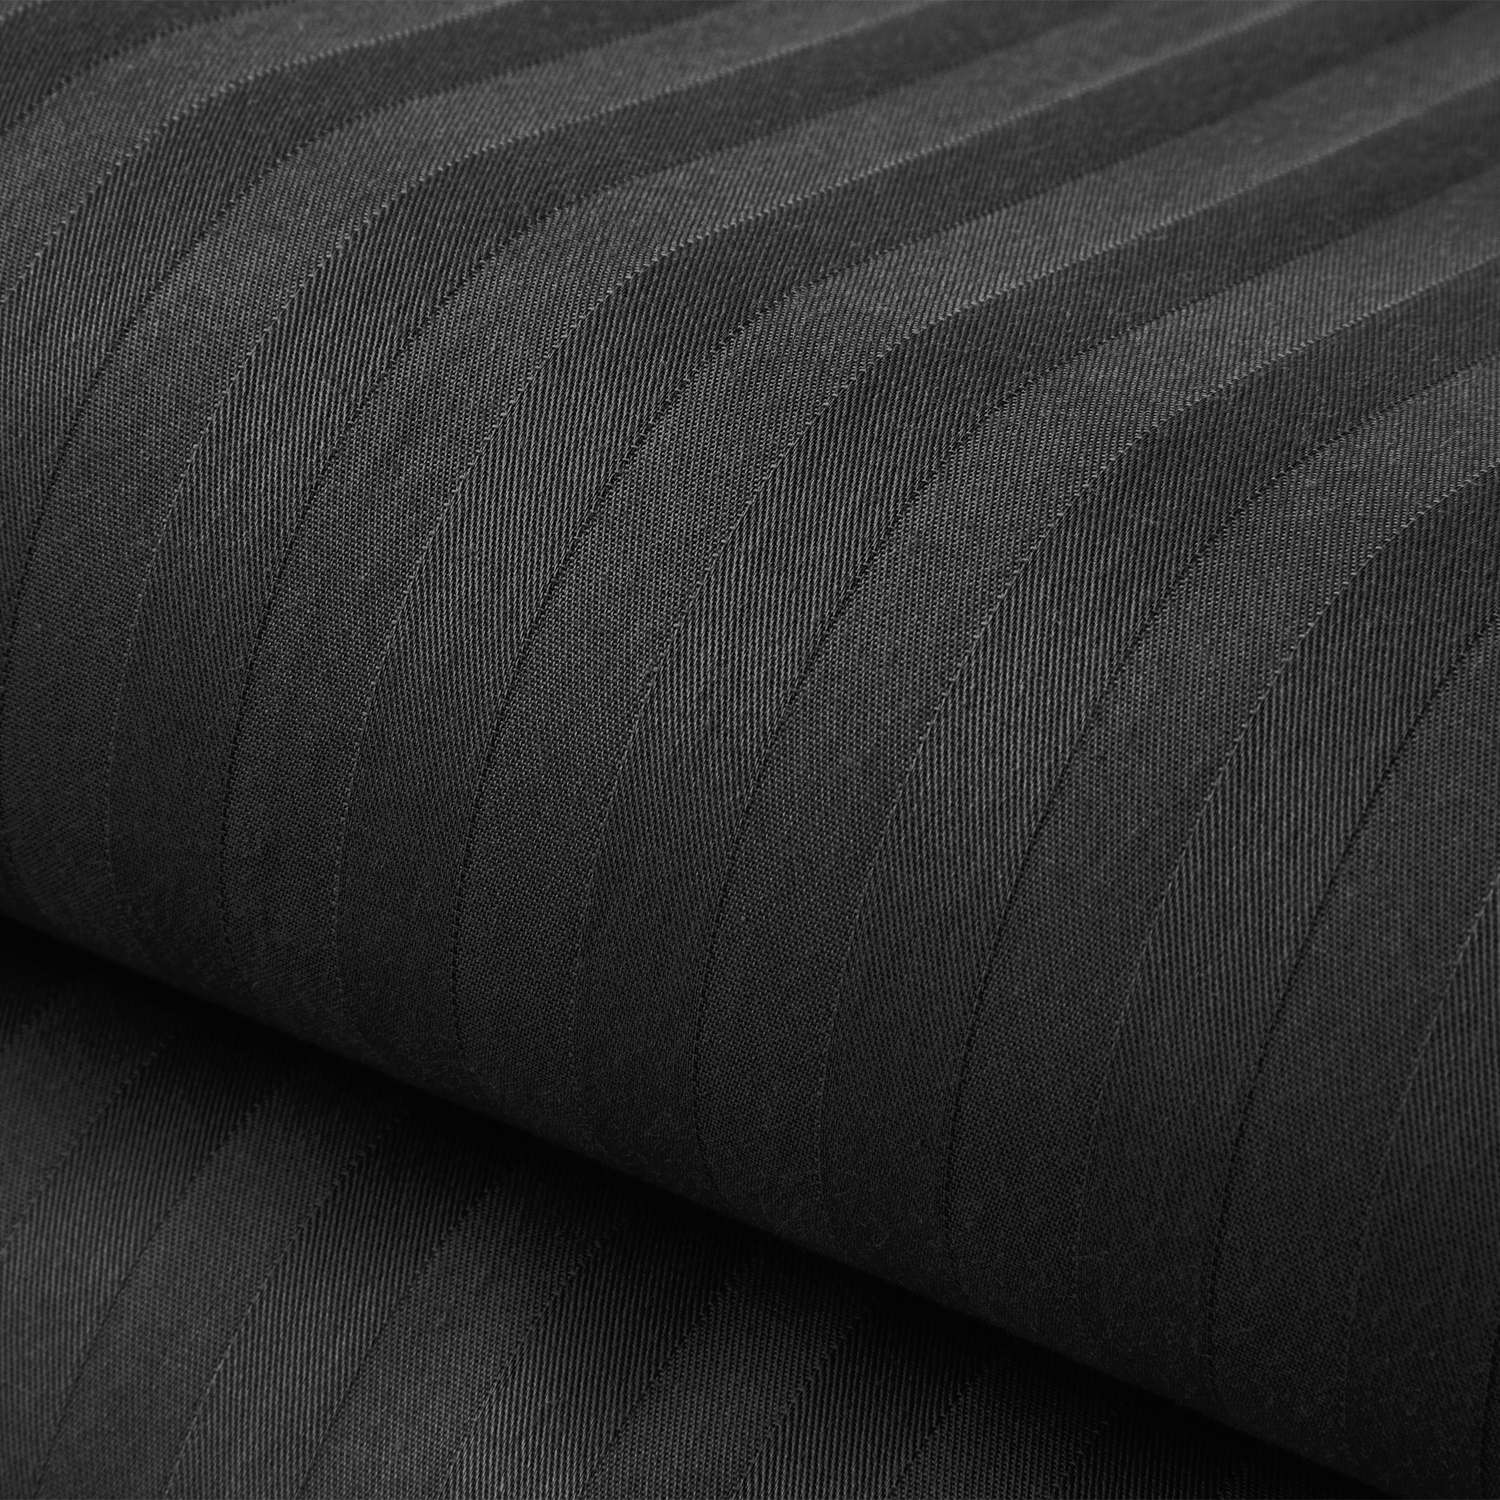 Комплект постельного белья Verossa 1.5СП Black страйп-сатин наволочки 70х70см 100% хлопок - фото 8